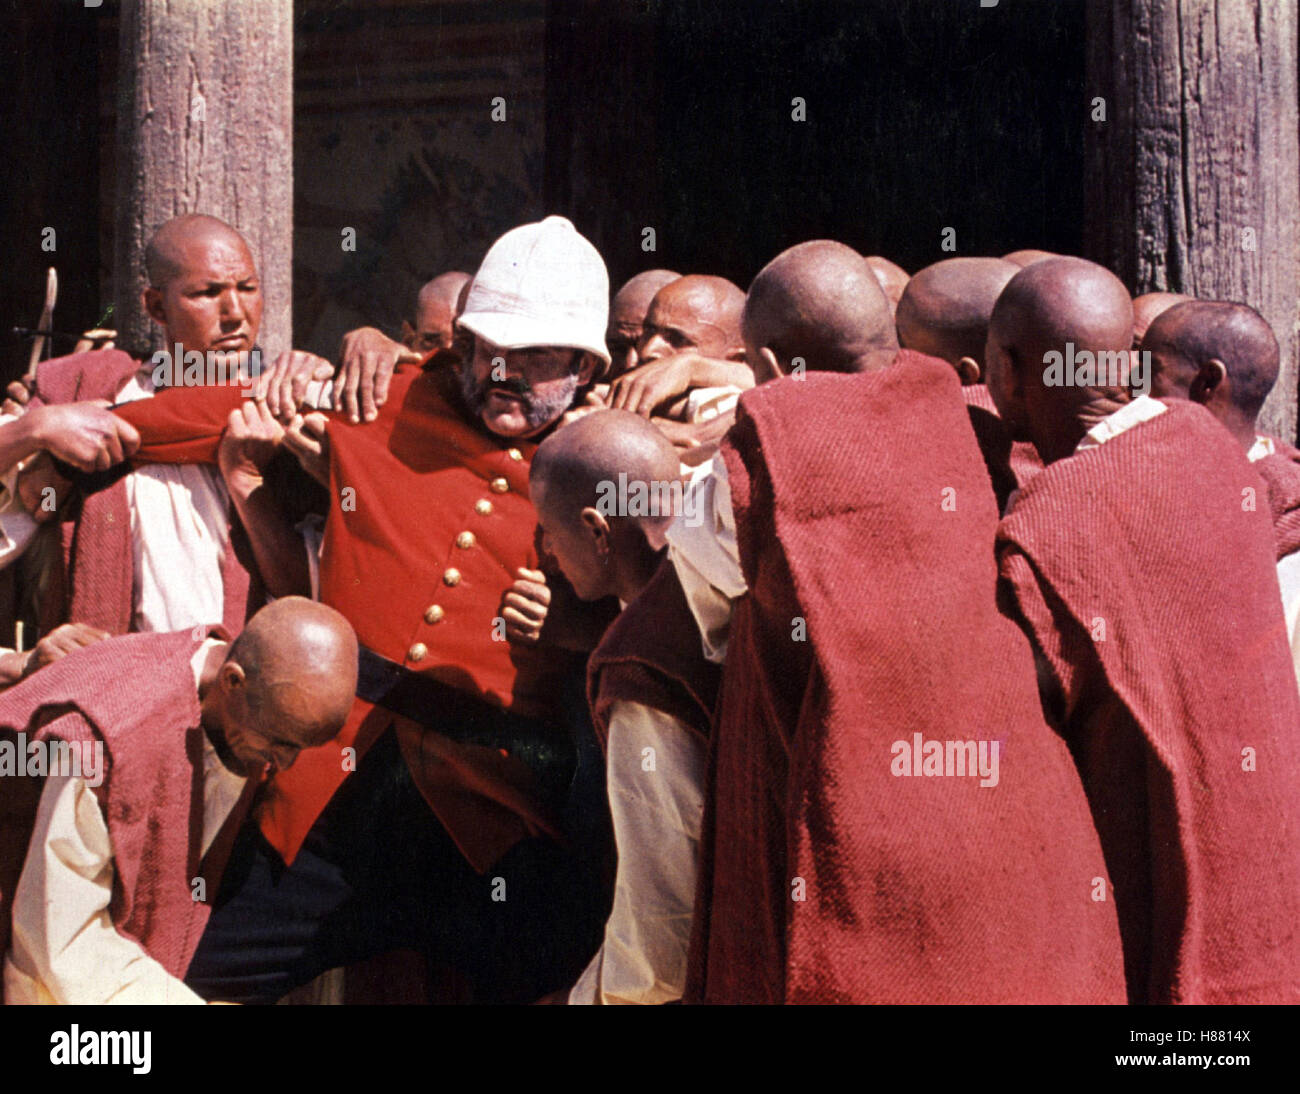 Der Mann, der König sein wollte, (l'UOMO CHE SAREBBE IL RE) GB 1975, Regie: John Huston, Sean Connery Foto Stock